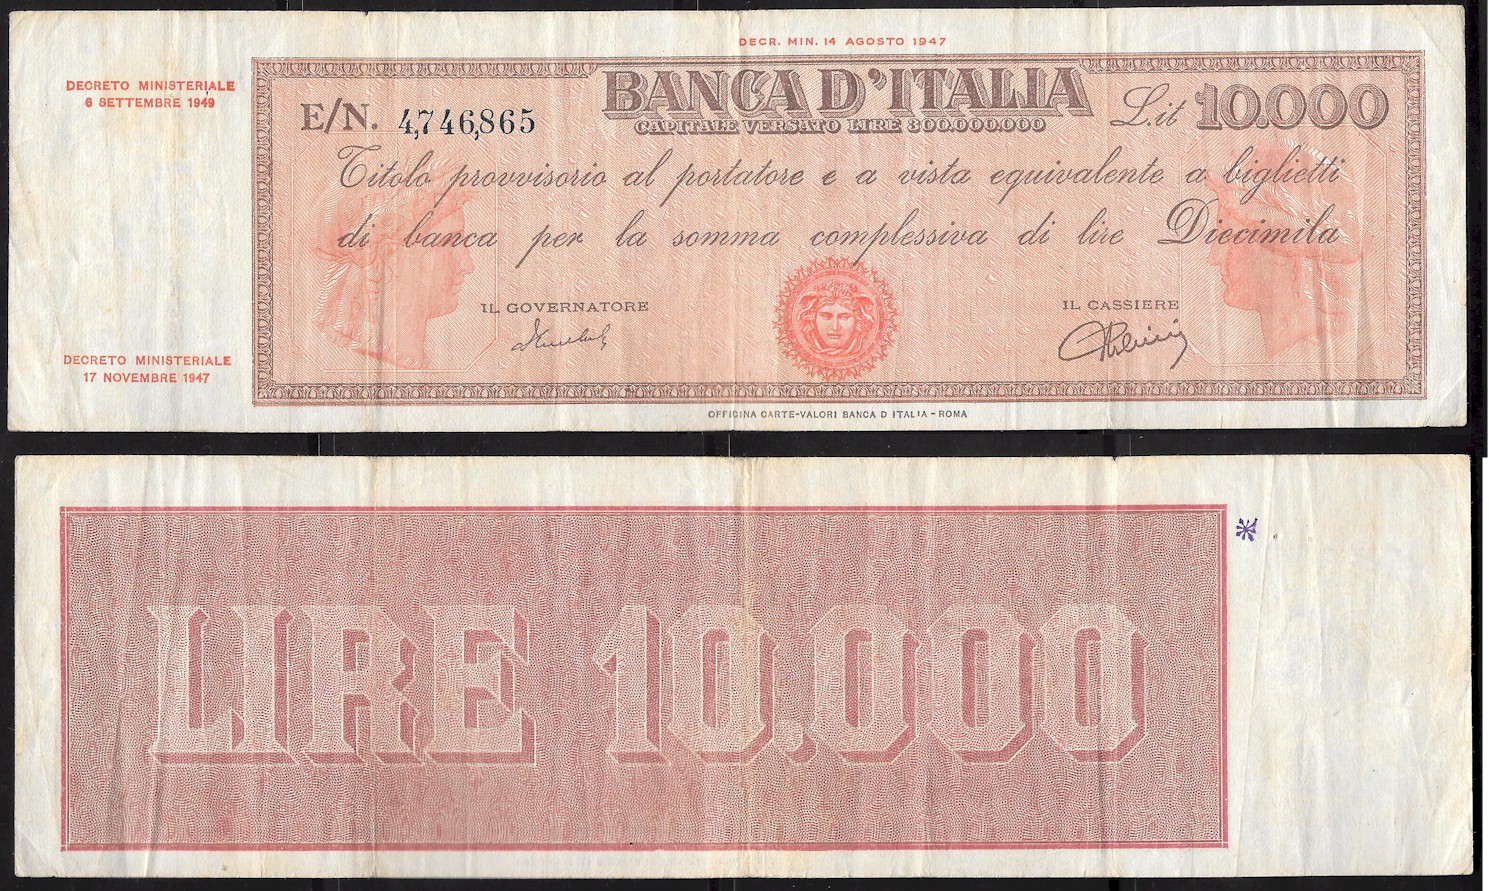  Repubblica Italiana - diecimila lire "Titolo Provvisorio" - dec. min. 06-09-1949